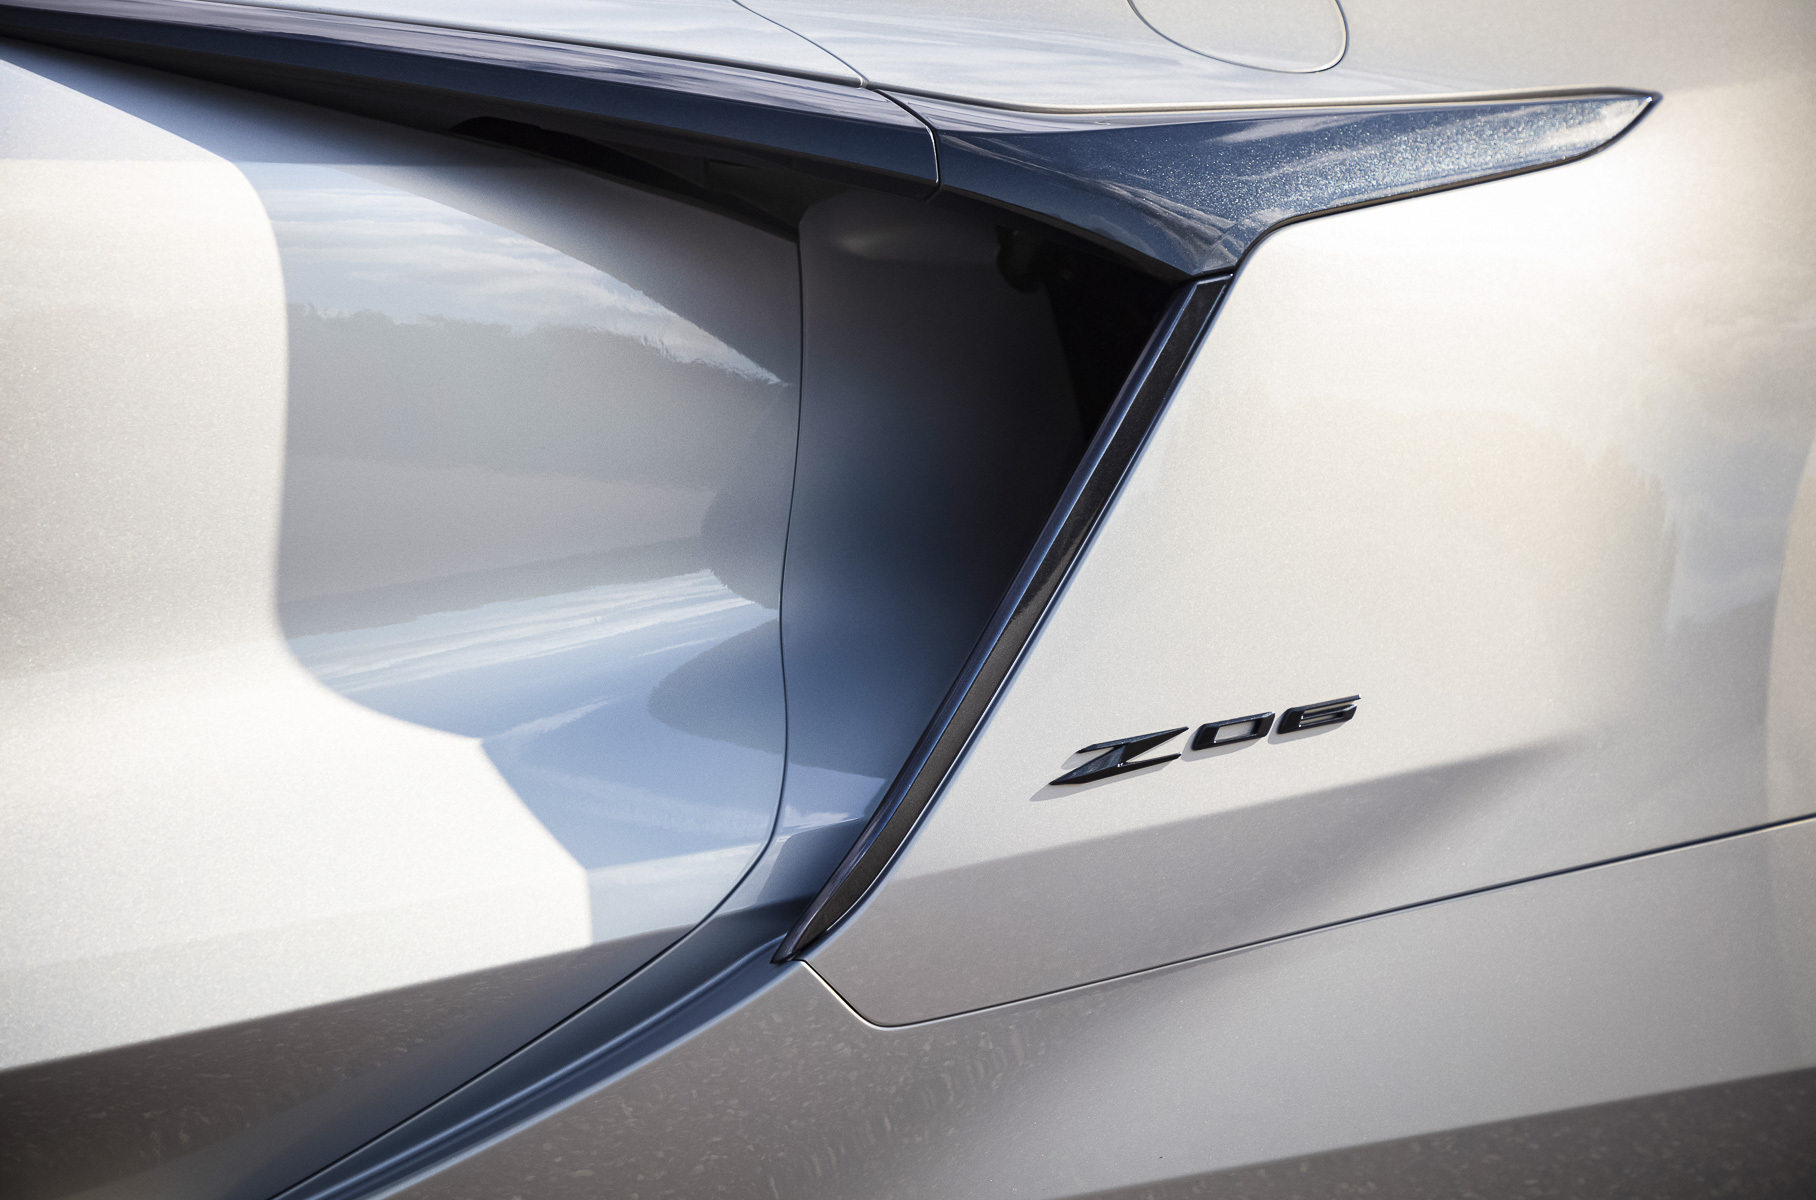 670 сил и 2,6 секунды до 97 километров в час: представлен «заряженный» Chevrolet Corvette Z06